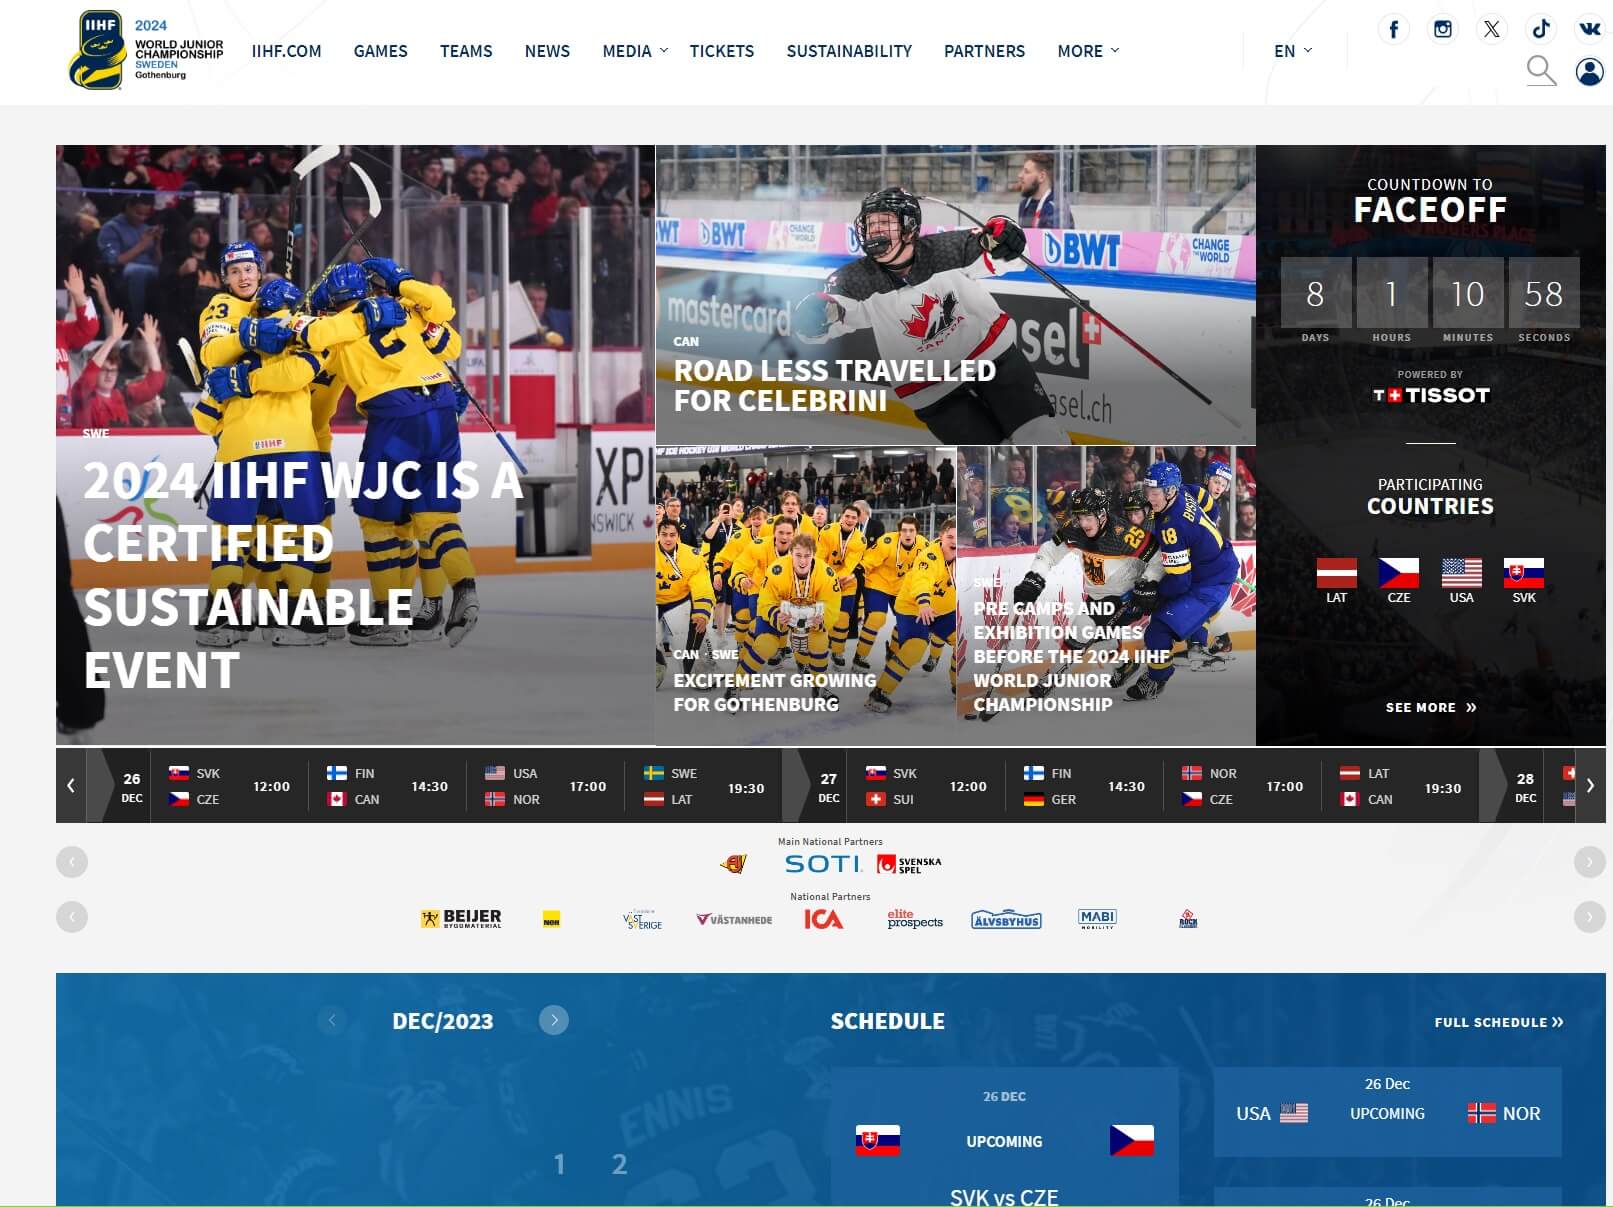 Oficiálny web IIHF ponúka všetky dôležité informácie o Majstrovstvách sveta v hokeji hráčov do 20 rokov